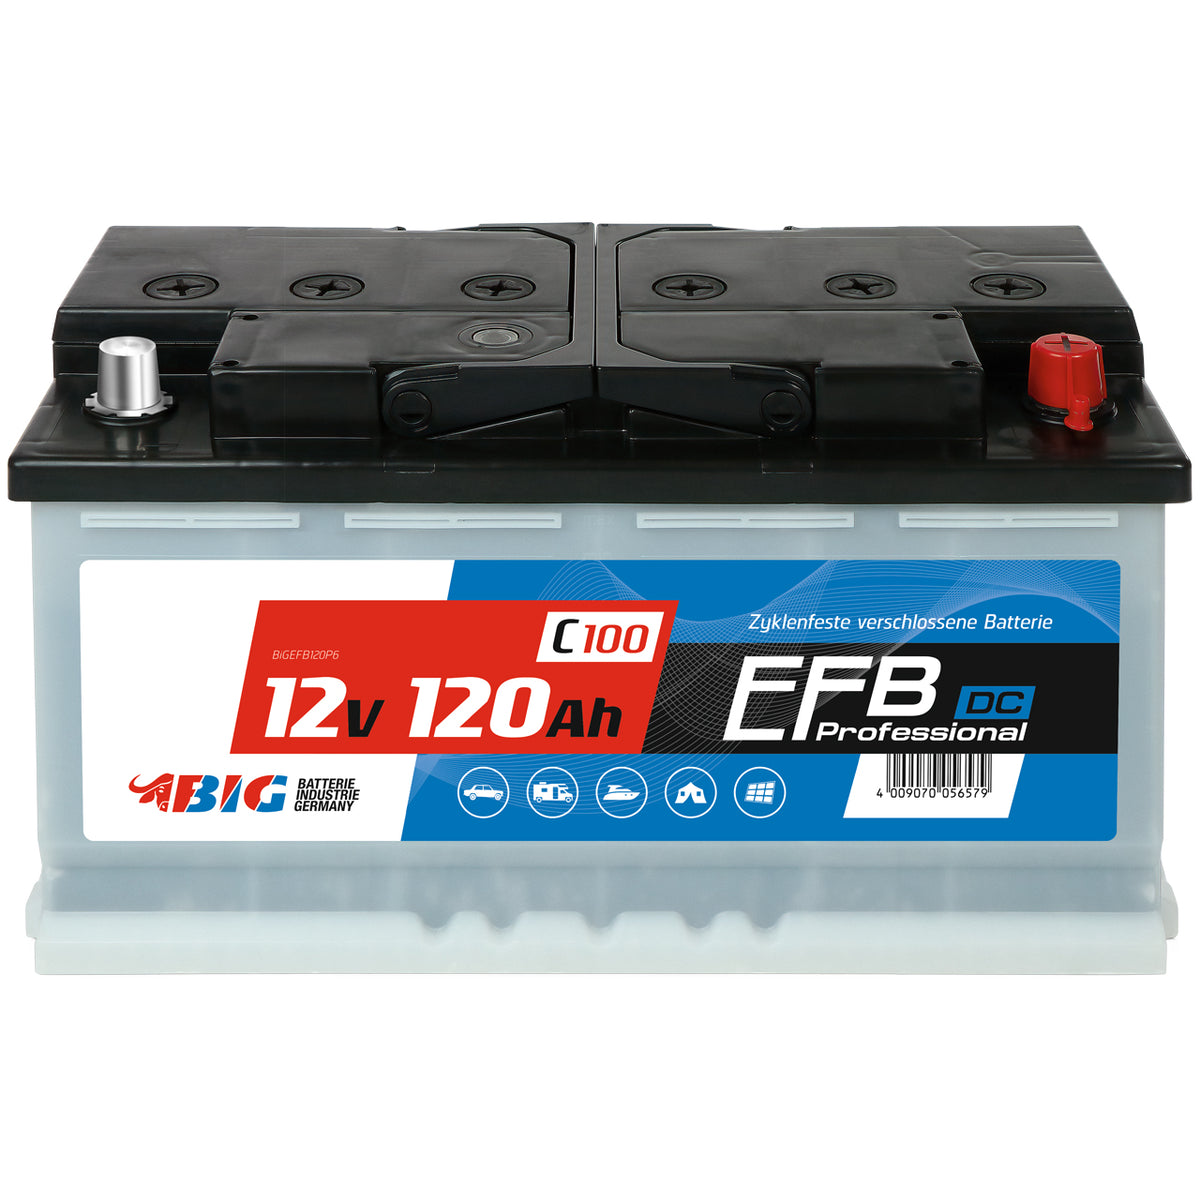 EFB-Batterien kaufen – bis zu 75 % günstiger!